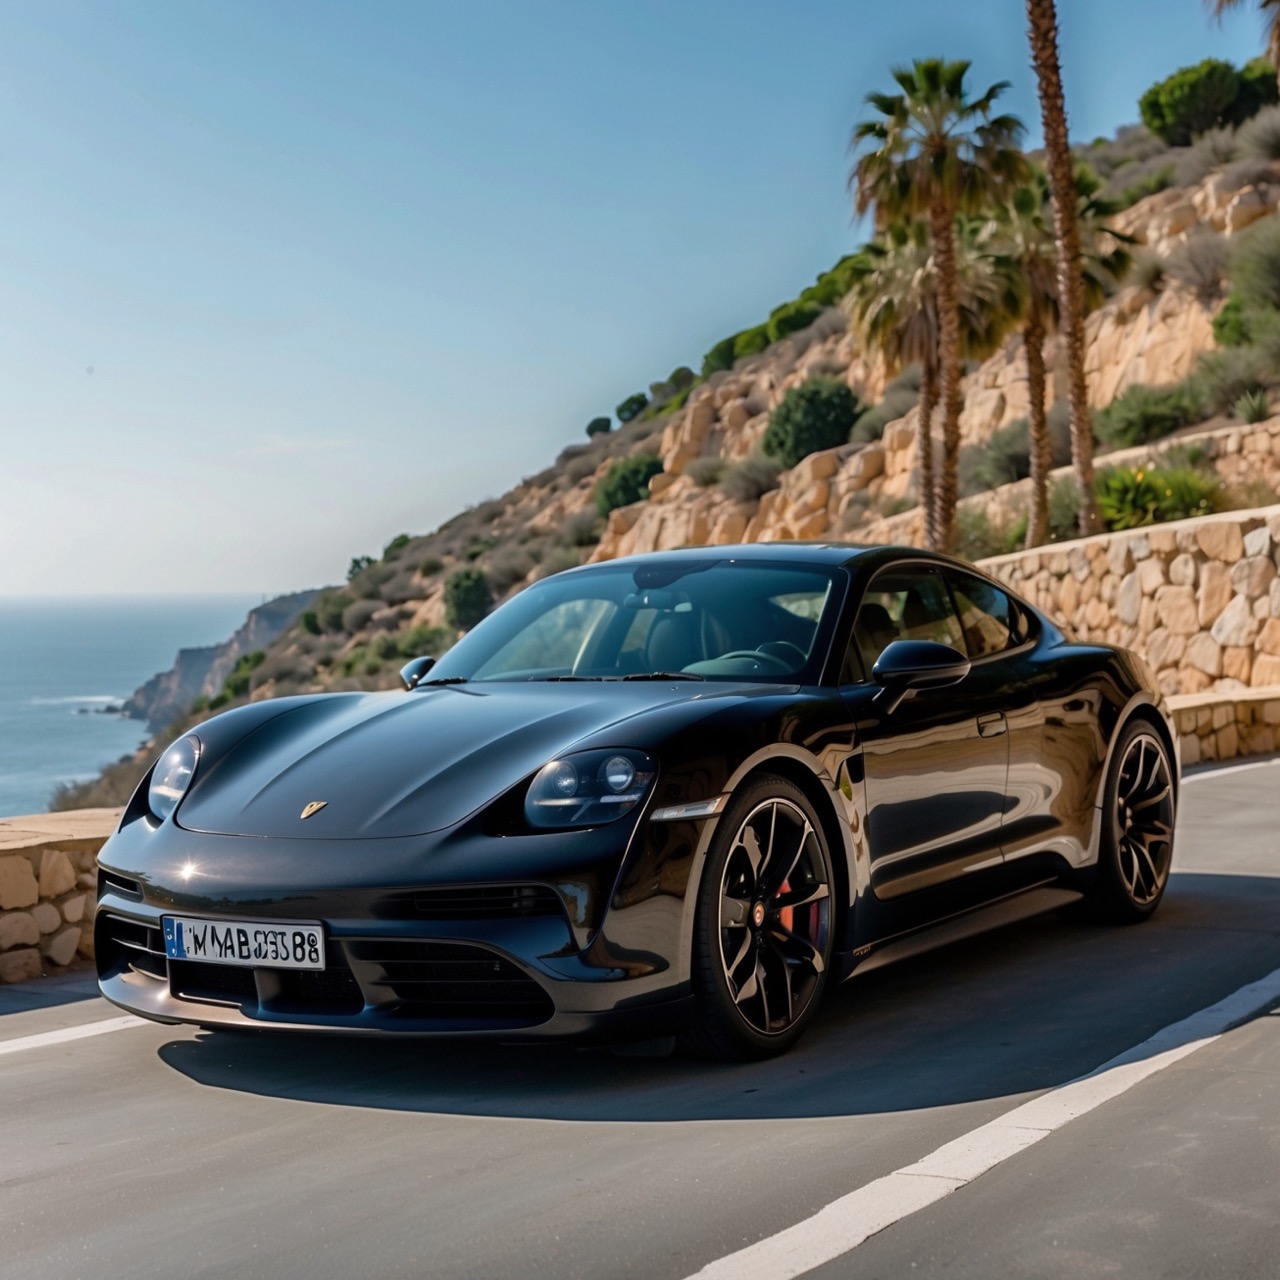 Luxury Car Porsche Rental Mallorca